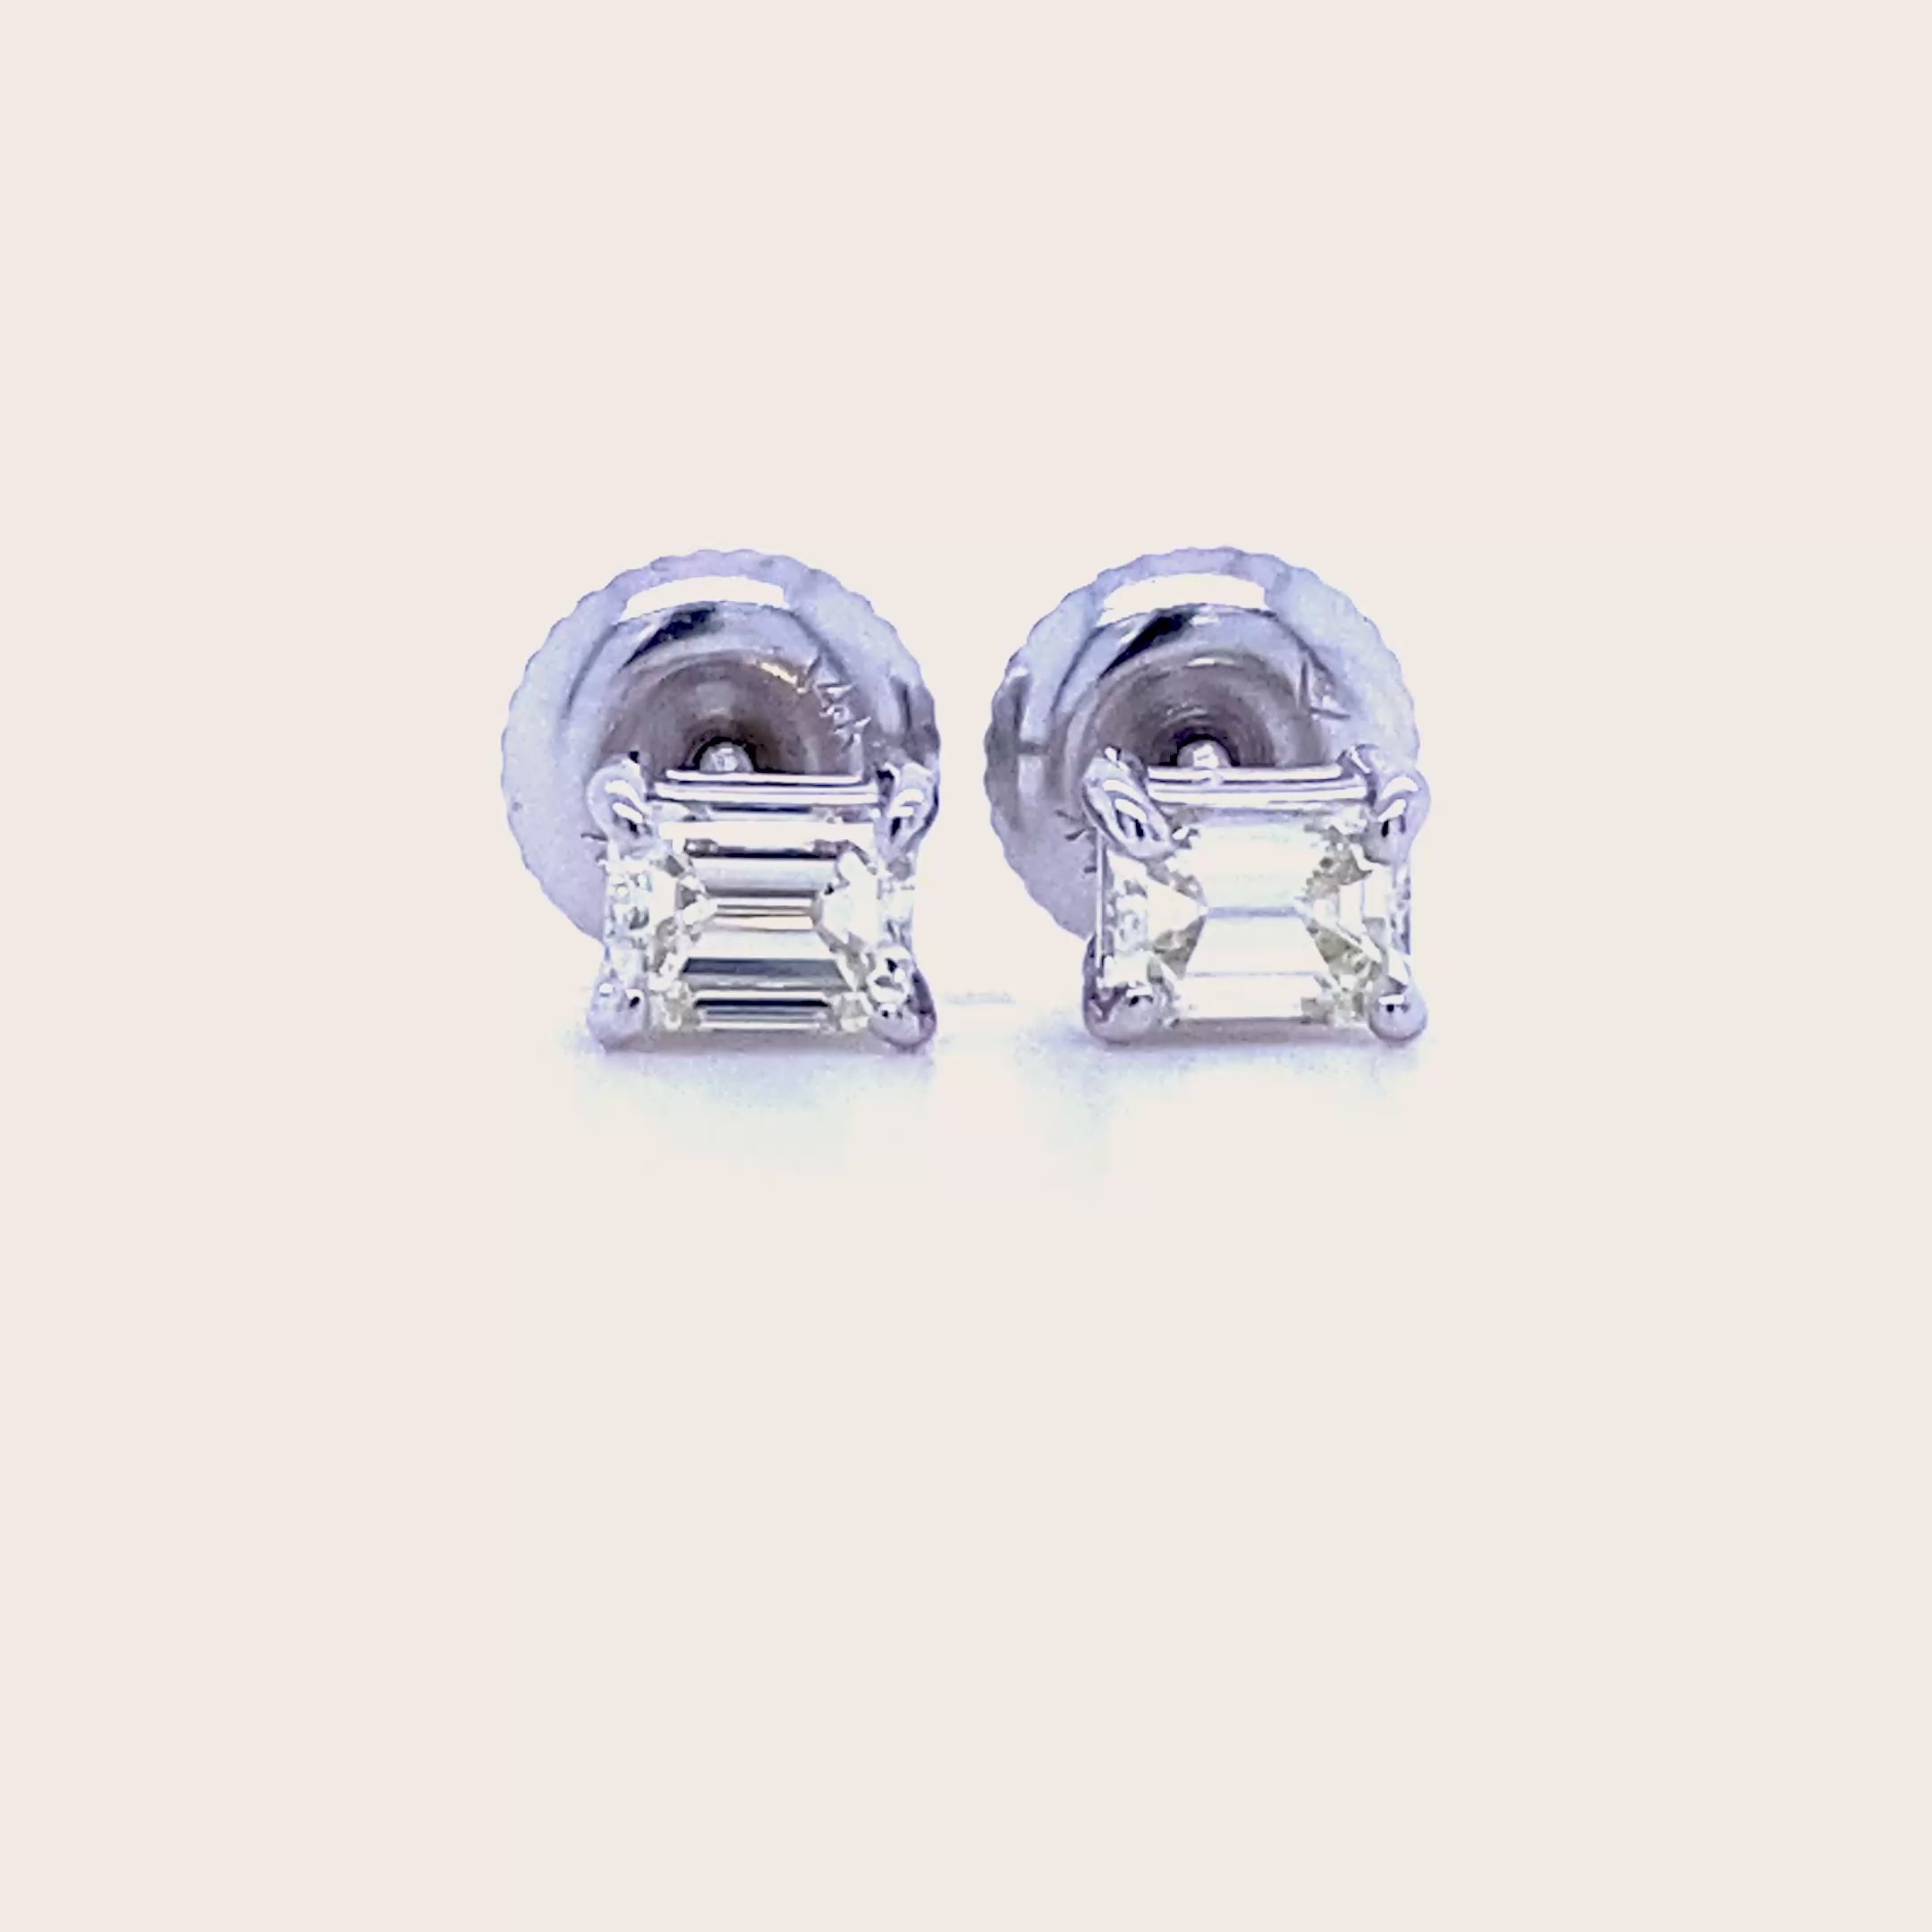 Modern 0.50 CT Emerald Cut Diamond Stud Earrings in 14 KT White Gold